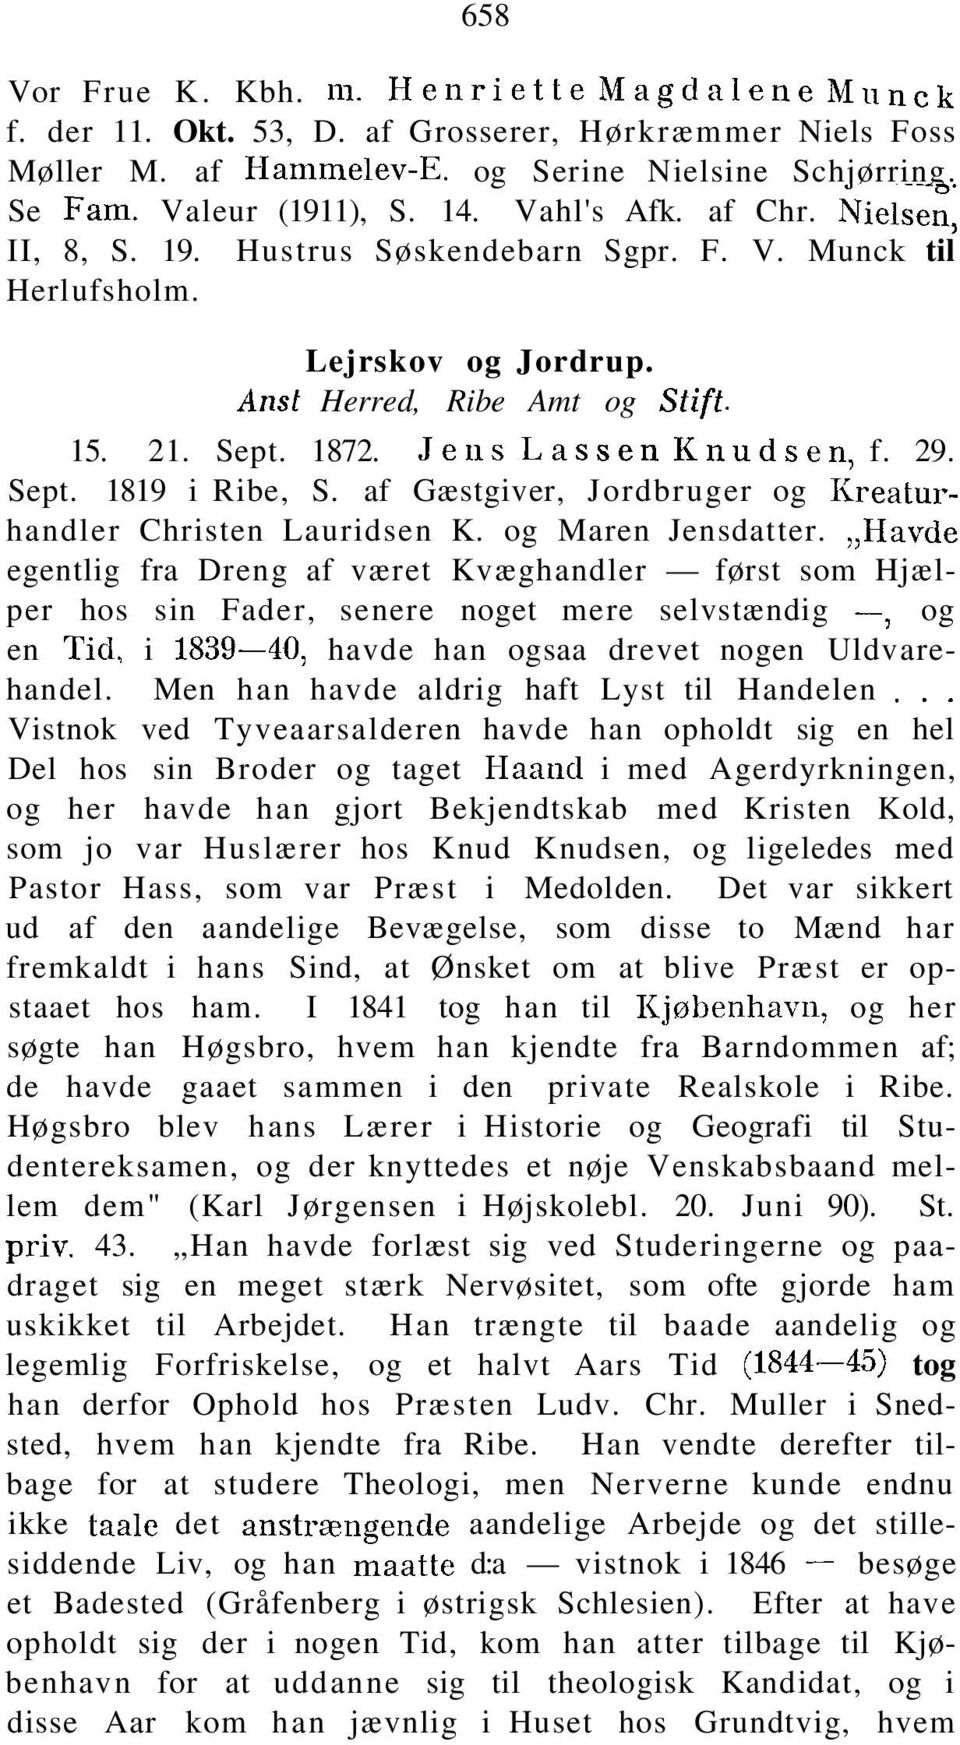 Sept. 1819 i Ribe, S. af Gæstgiver, Jordbruger og Kreaturhandler Christen Lauridsen K. og Maren Jensdatter.